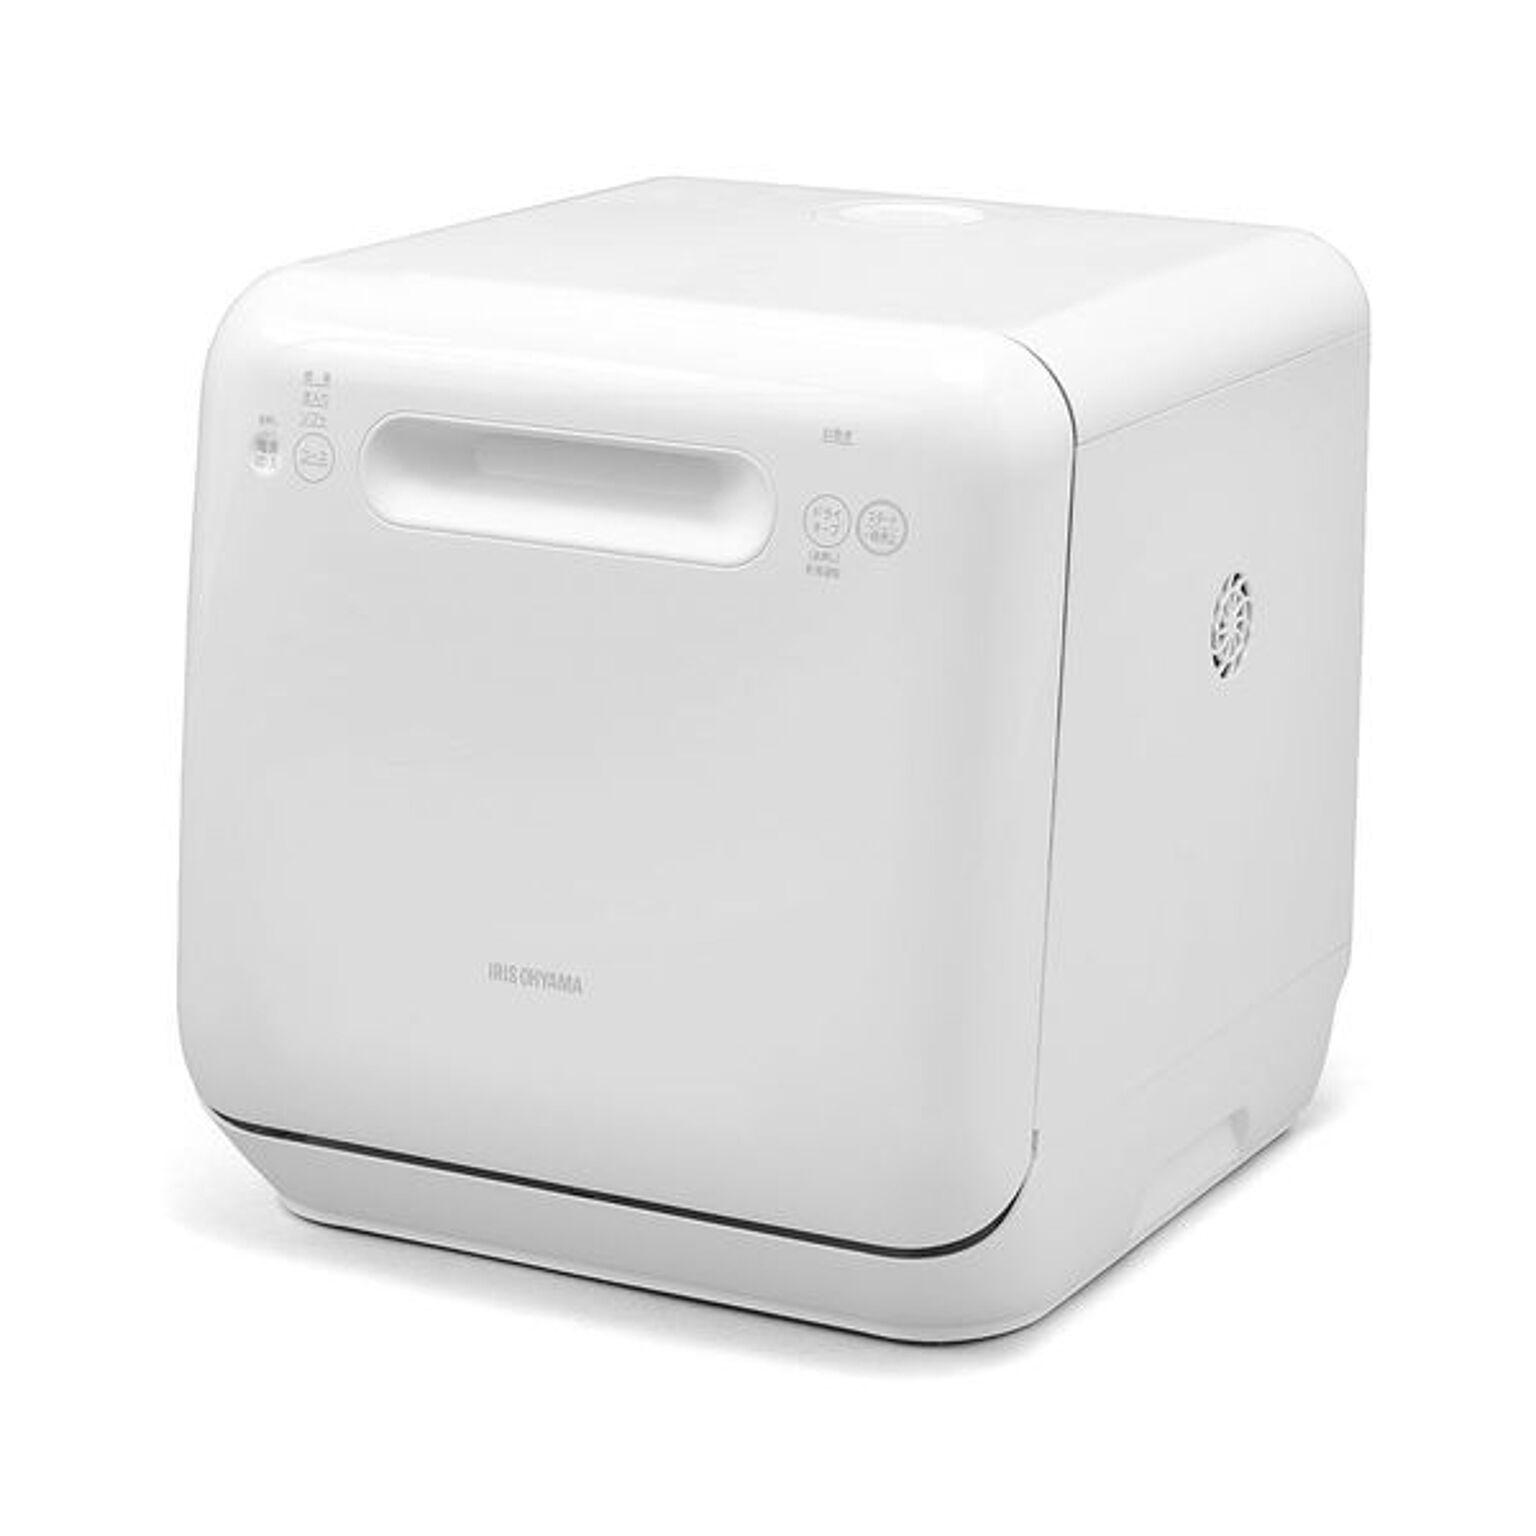 アイリスオーヤマ 食洗機 食器洗い乾燥機 工事不要 コンパクト 上下ノズル洗浄 メーカー保証 ホワイト ISHT-5000-W